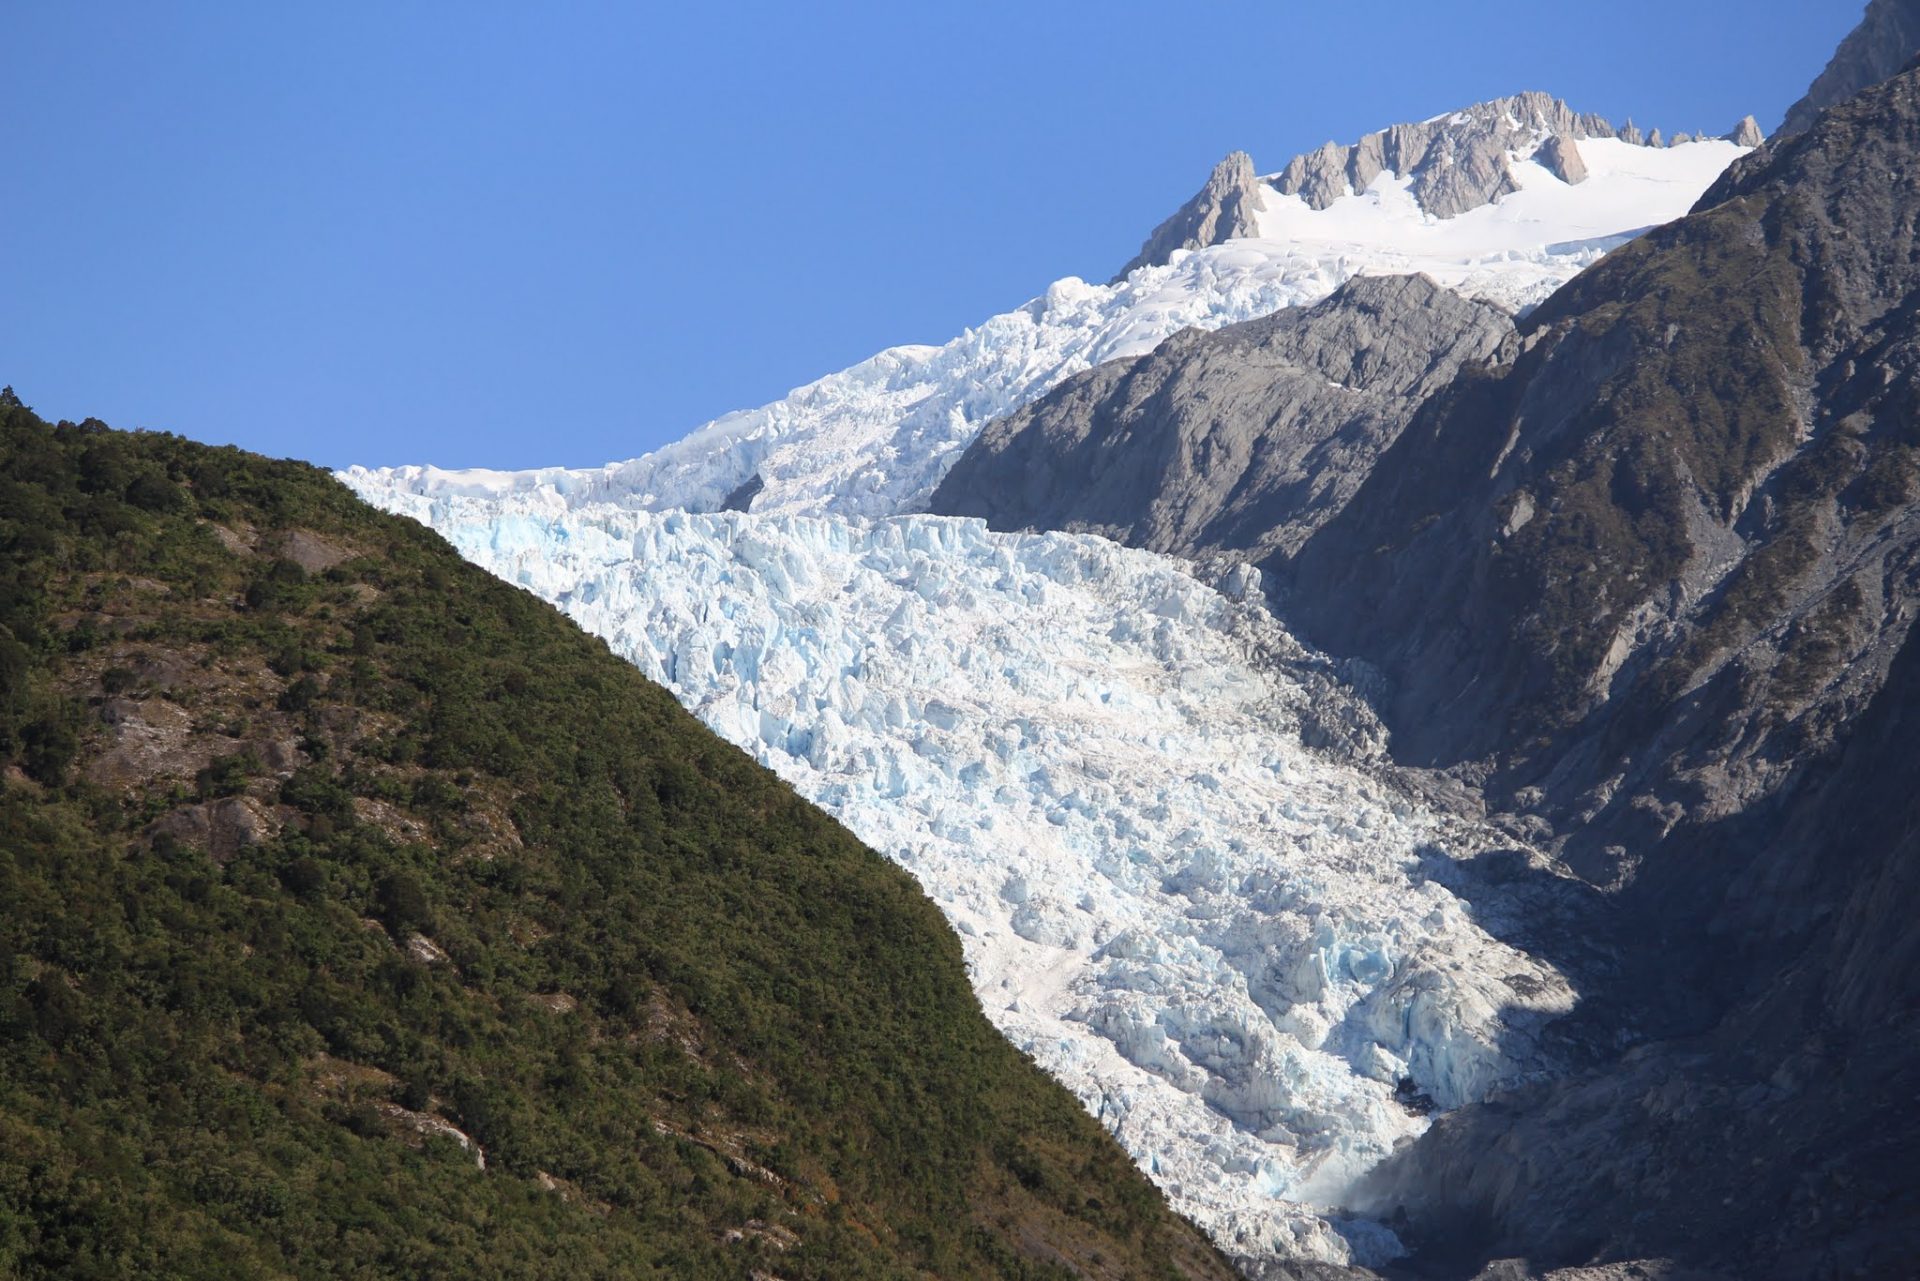 franz josef glacier - Hiking to Franz Josef Glacier, New Zealand